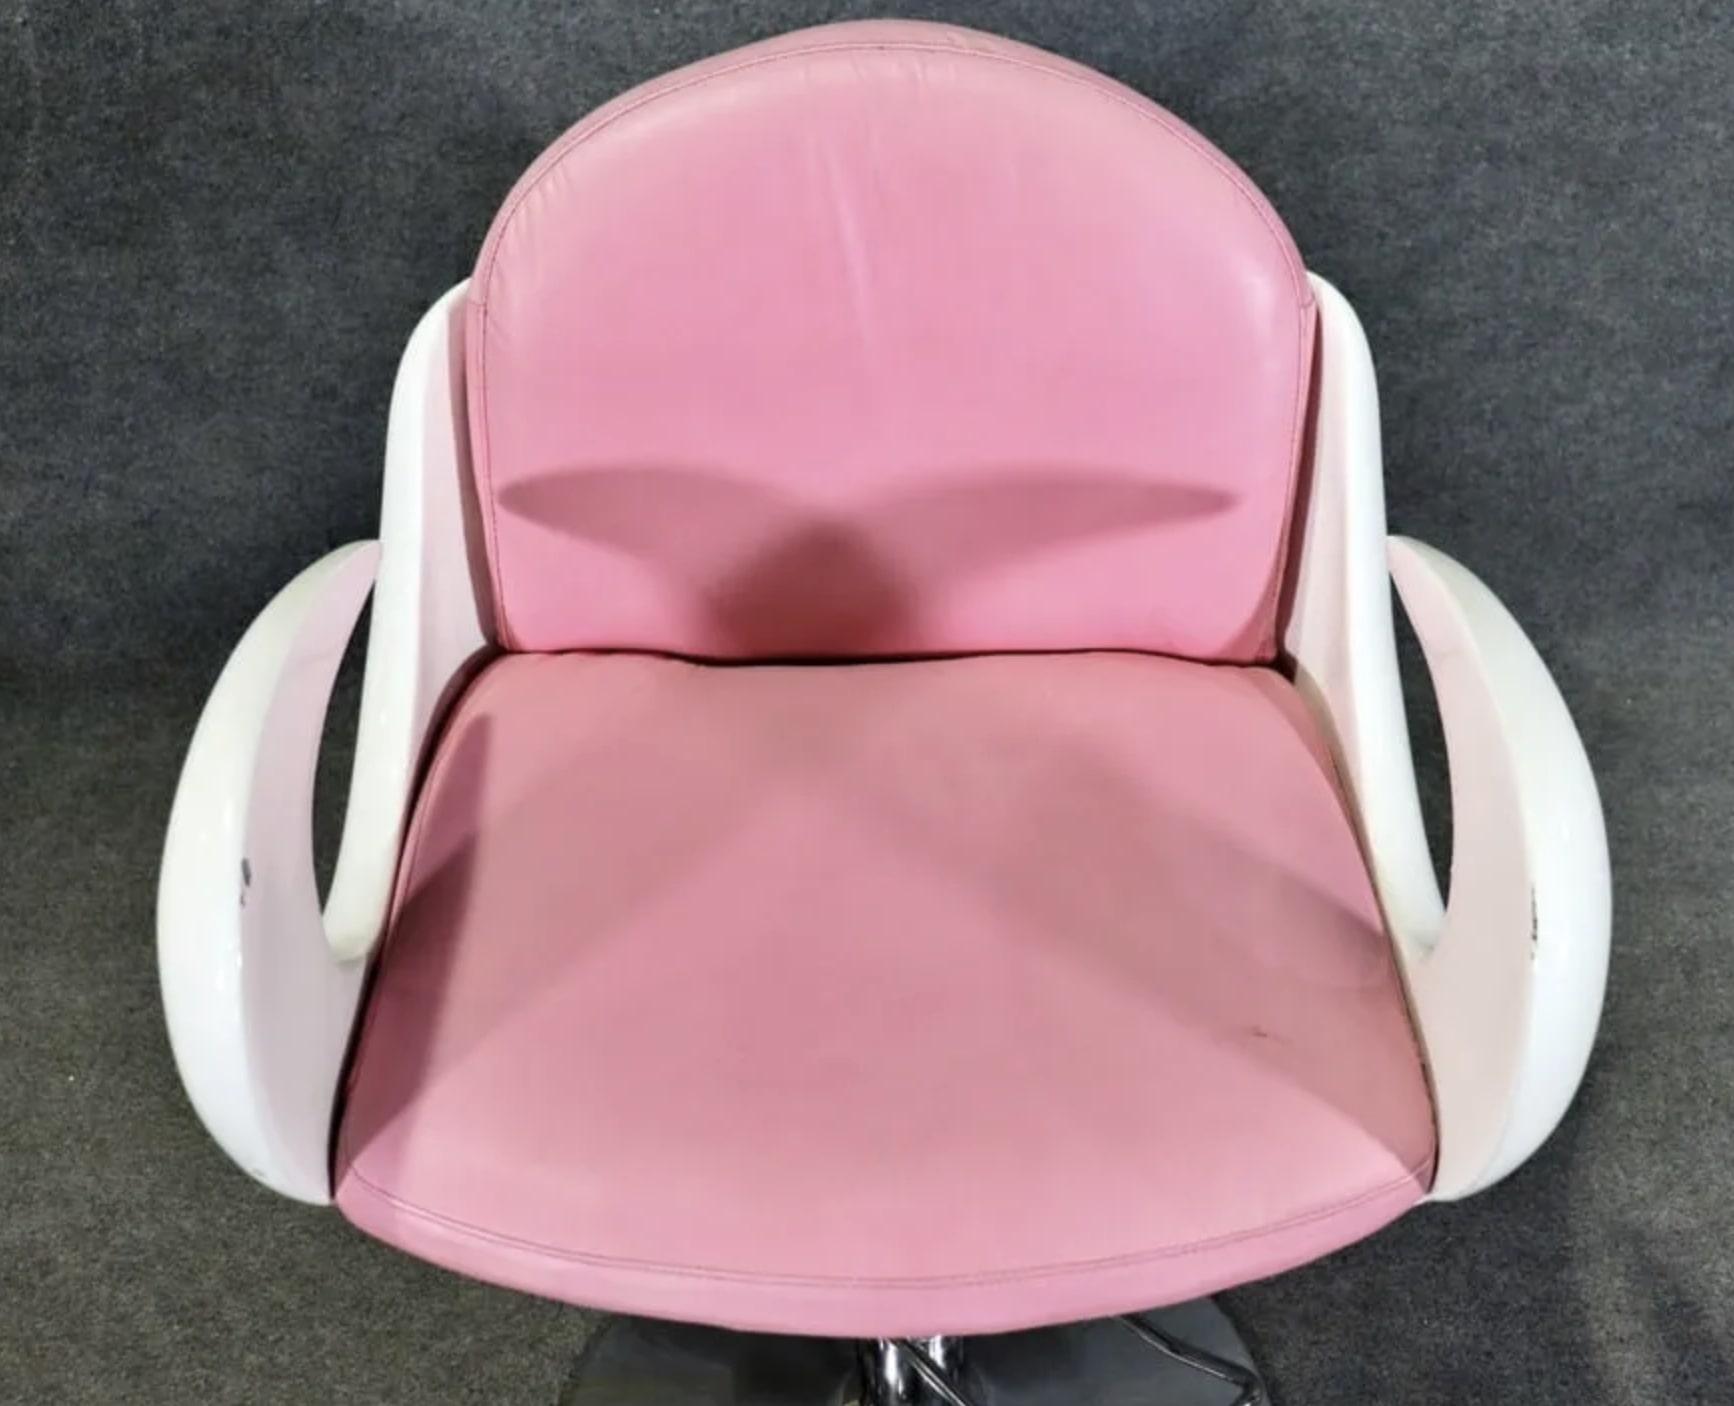 Seltener Barbershop-Stuhl in Weiß und Rosa. Geschwungene Arme und polierter Metallsockel.
Bitte bestätigen Sie den Standort NY oder NJ